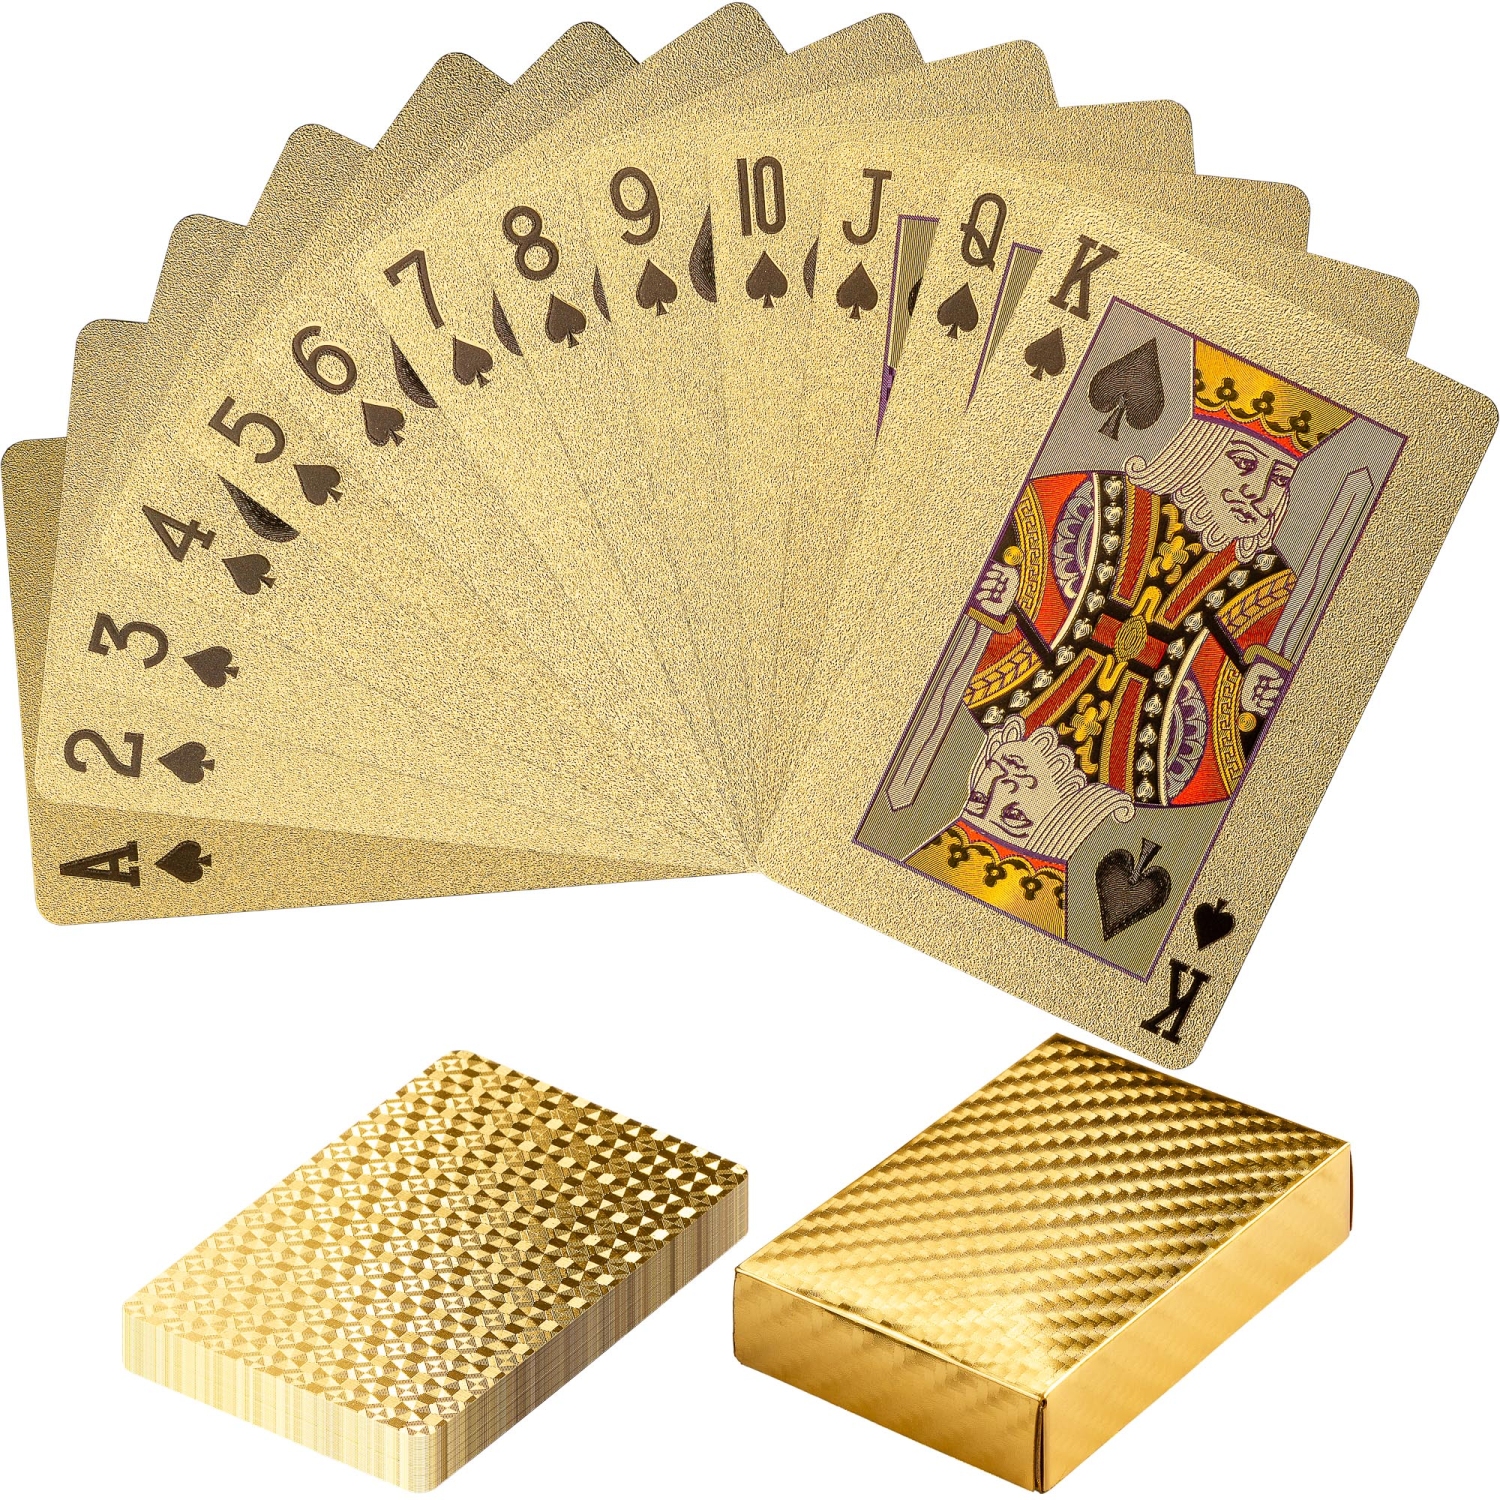 Pokerkarten NEU Goldene Spielkarten Skatkarten 